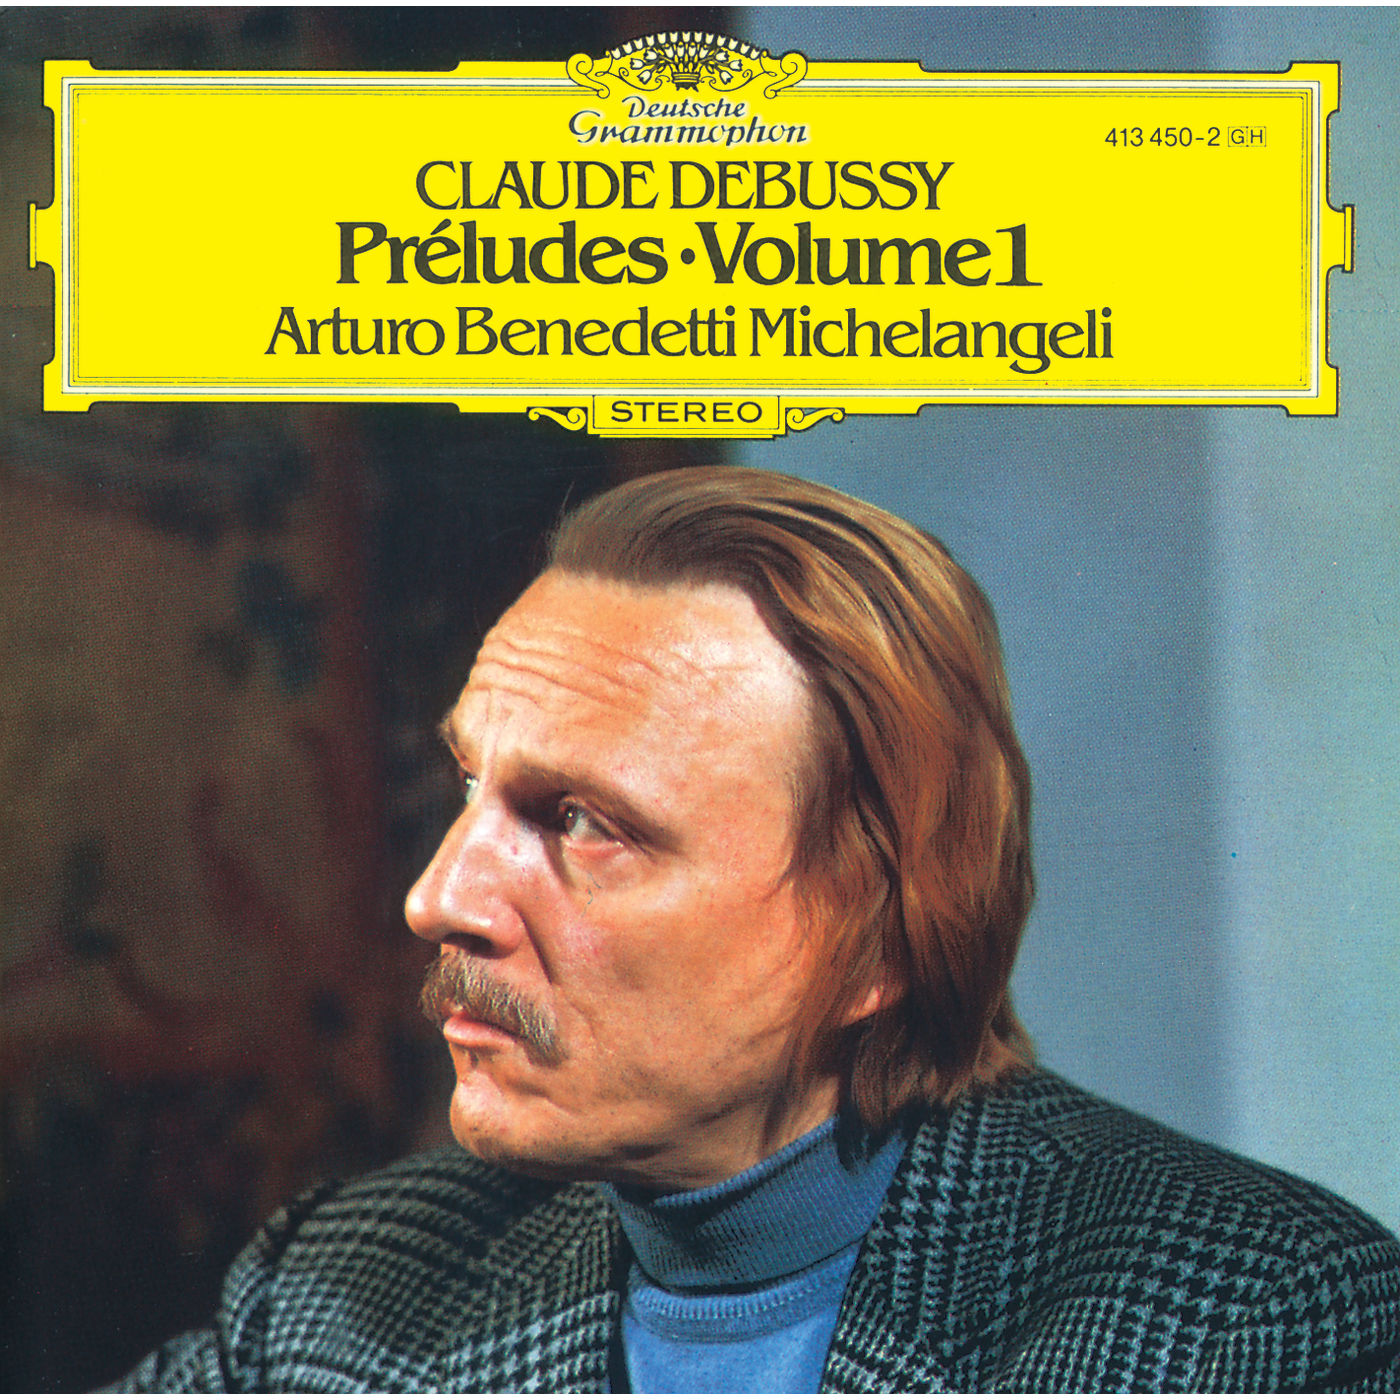 Arturo Benedetti Michelangeli – Debussy: Preludes I (1978/2020) [FLAC 24bit/192kHz]